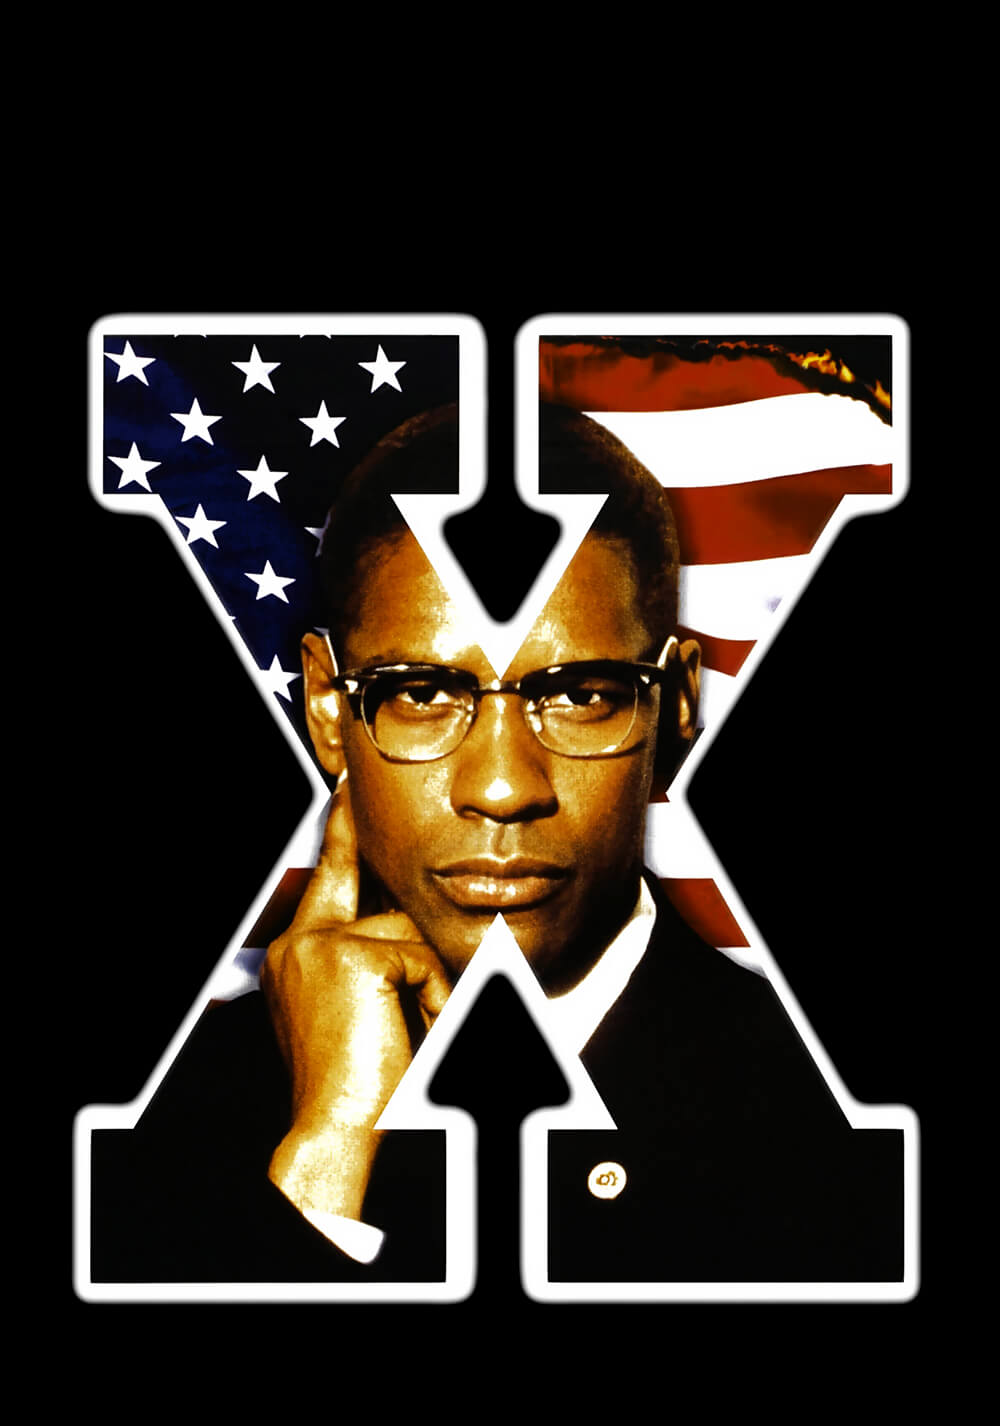 مالکوم ایکس (Malcolm X)